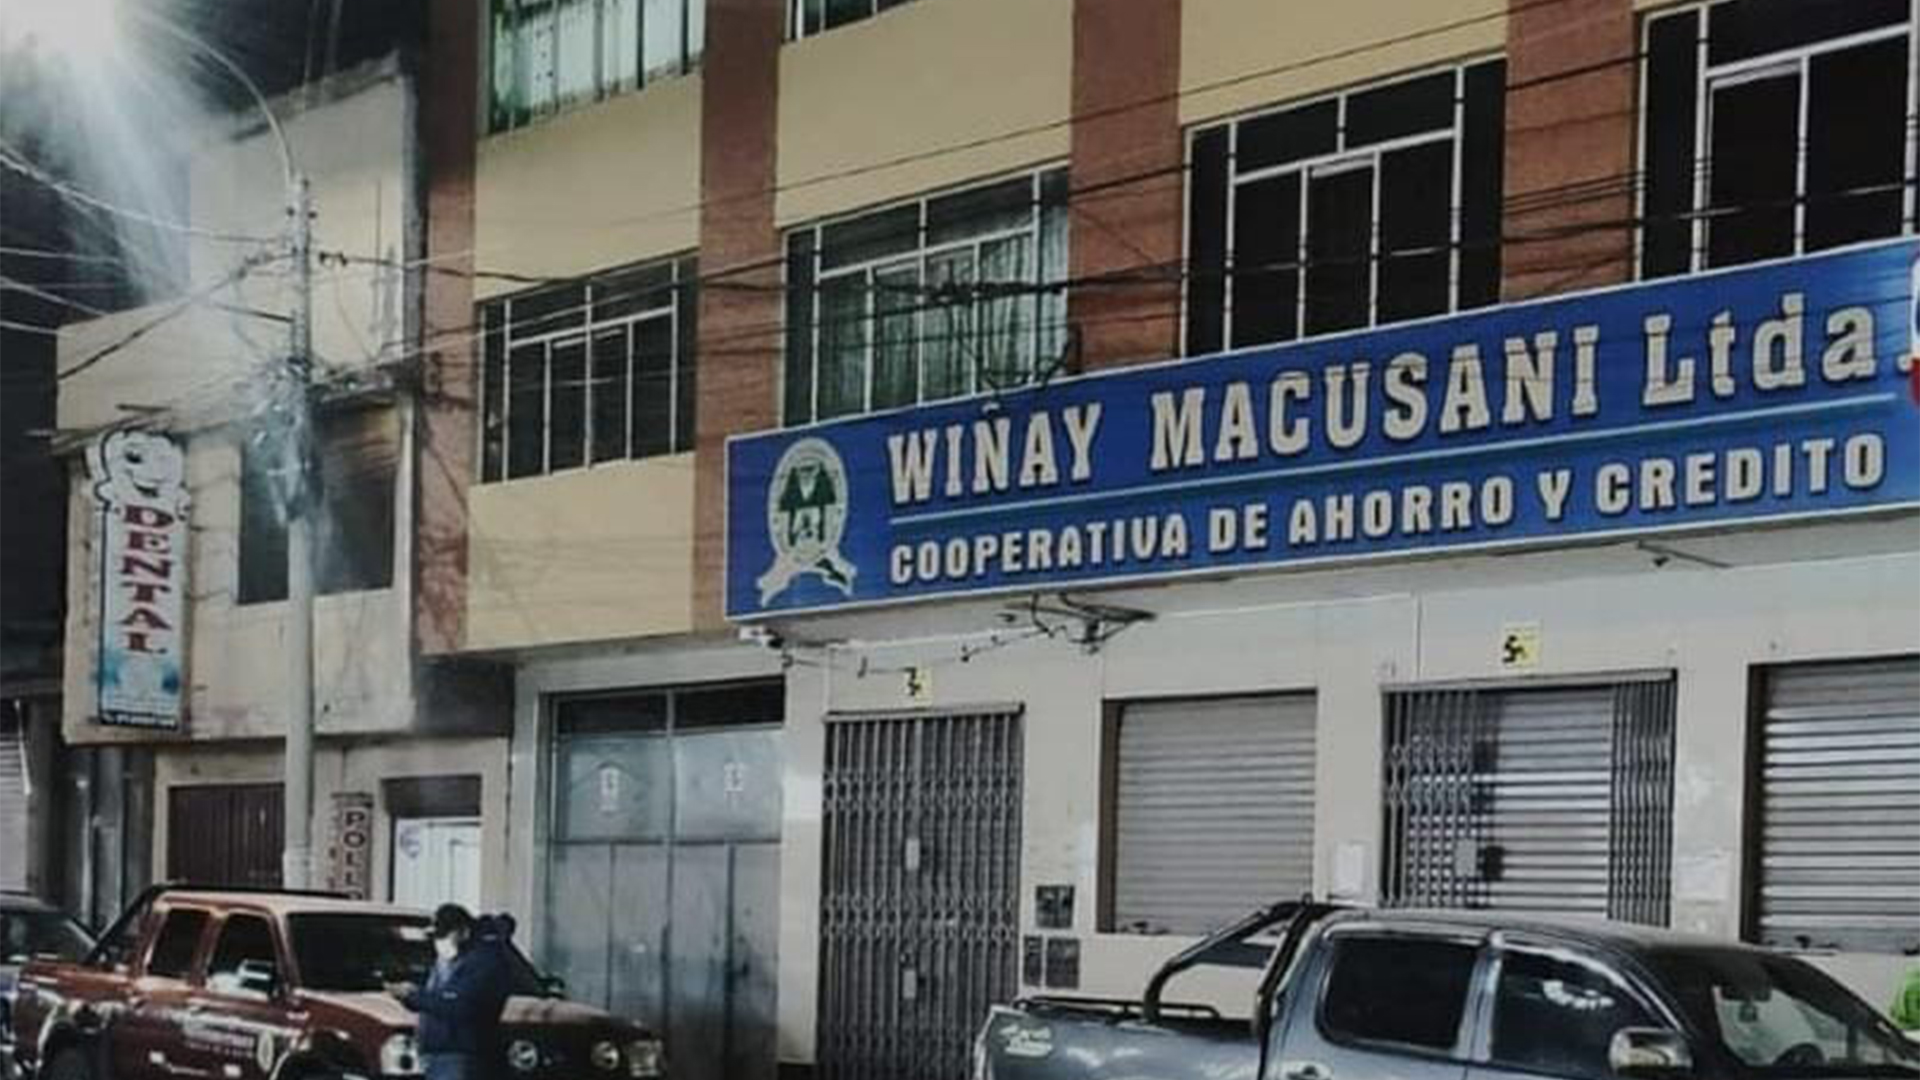 Delincuentes se llevaron más de 17 mil soles de cooperativa de ahorro y crédito Wiñay Macusani sede Juliaca